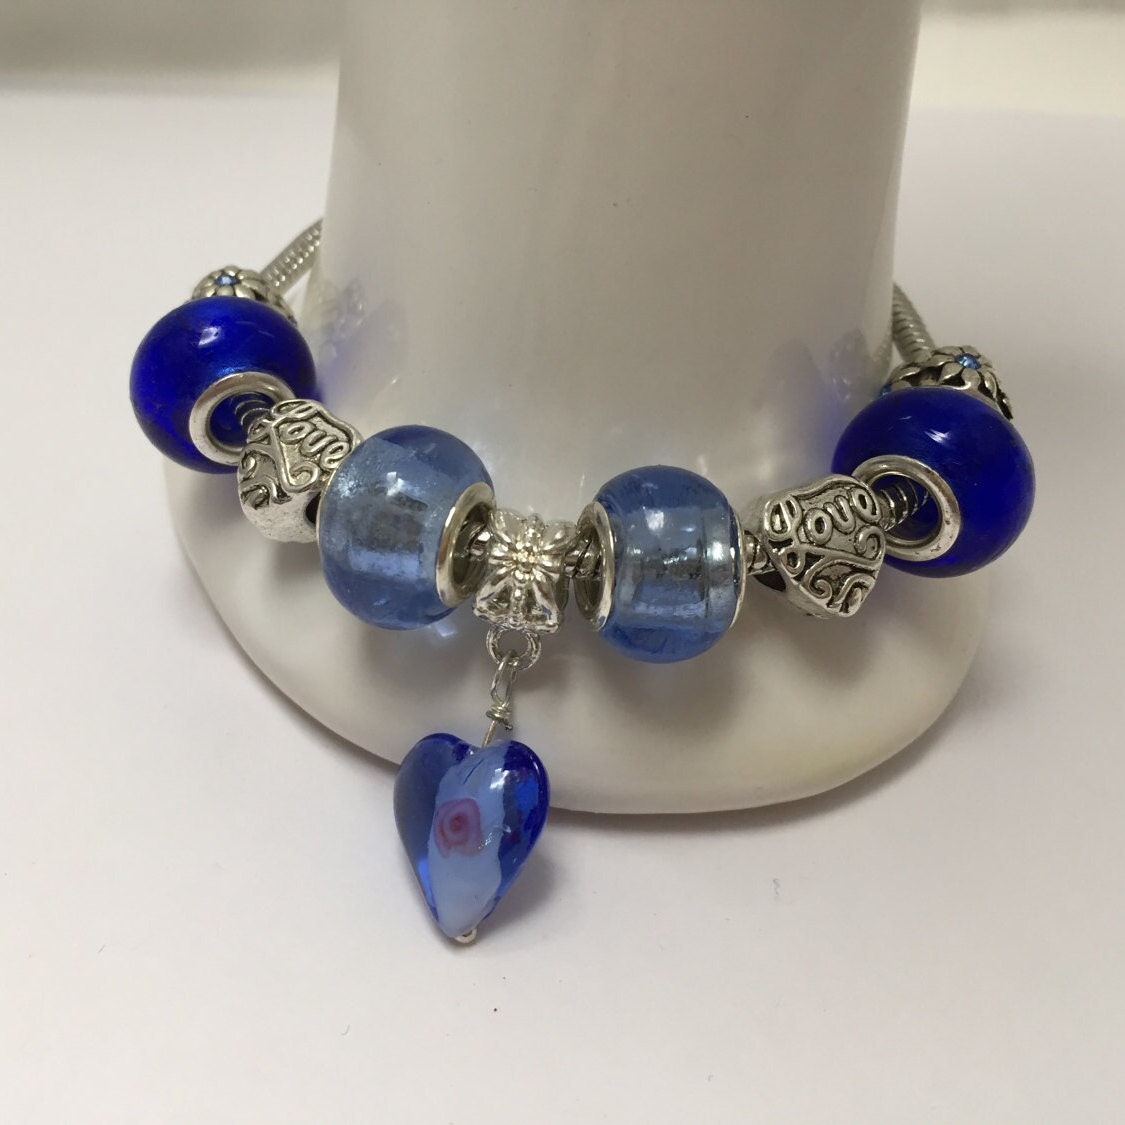 Voici ce que je viens d'ajouter dans ma #boutiqueetsy : Bracelet charm's, bleu, avec breloque coeur en lampwork réf 834 etsy.me/3ImV8jR #bleu #oui #non #mousqueton #braceletcharms #braceletbreloques #coeur #braceletperles #braceletfantaisie